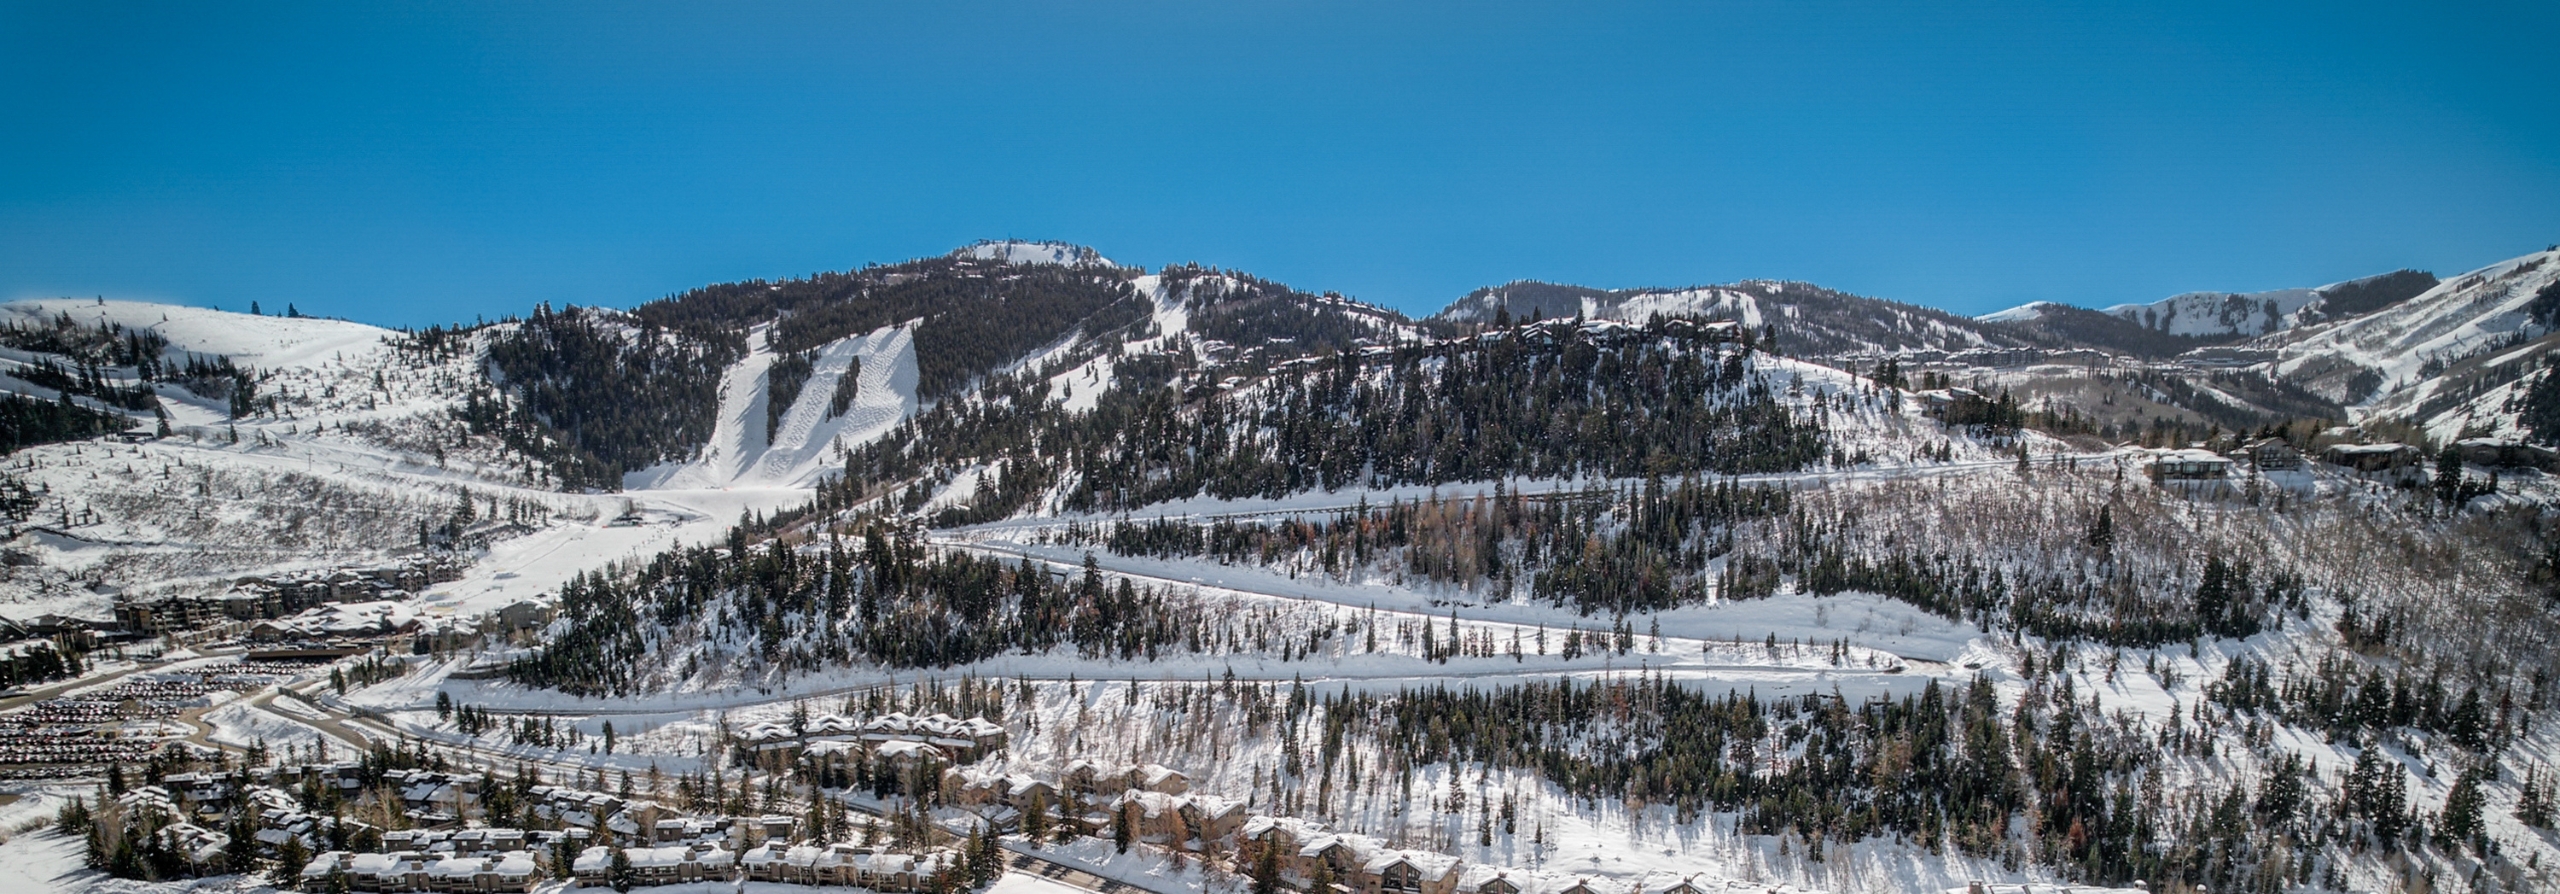 Deer Valley Ski Resort Sign - Why Deer Valley is Skier-Only